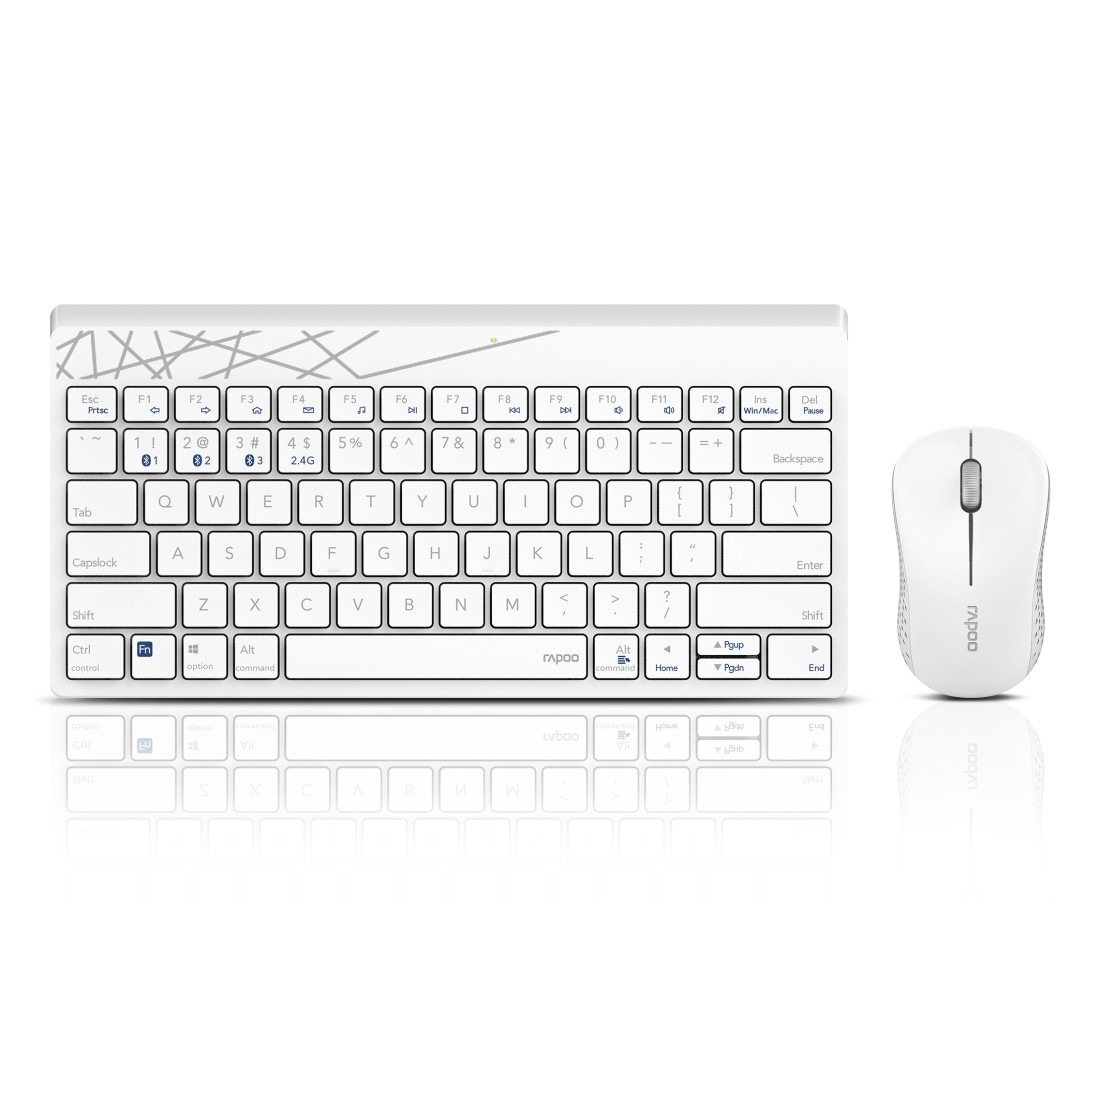 jetzt Tastatur-Maus-Set, Bluetooth, »8000M 1300 DPI« kaufen bei 2.4 kabelloses OTTO Maus-Set GHz, und Tastatur- Rapoo